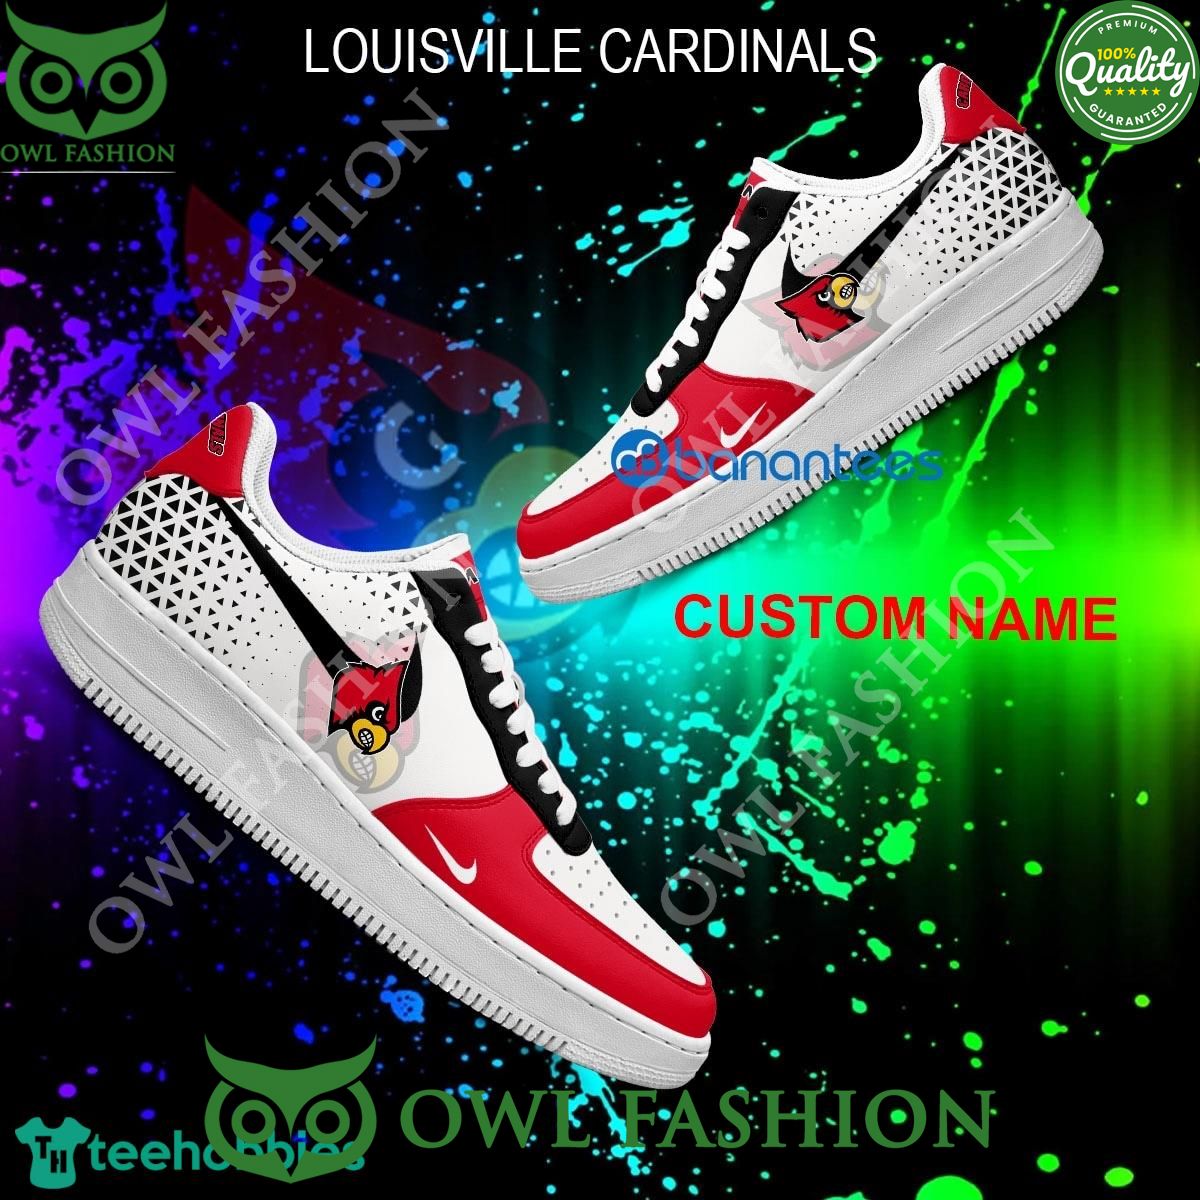 personalized ncaa louisville cardinals air force 1 aop af1 sneaker 1 w0ui6.jpg